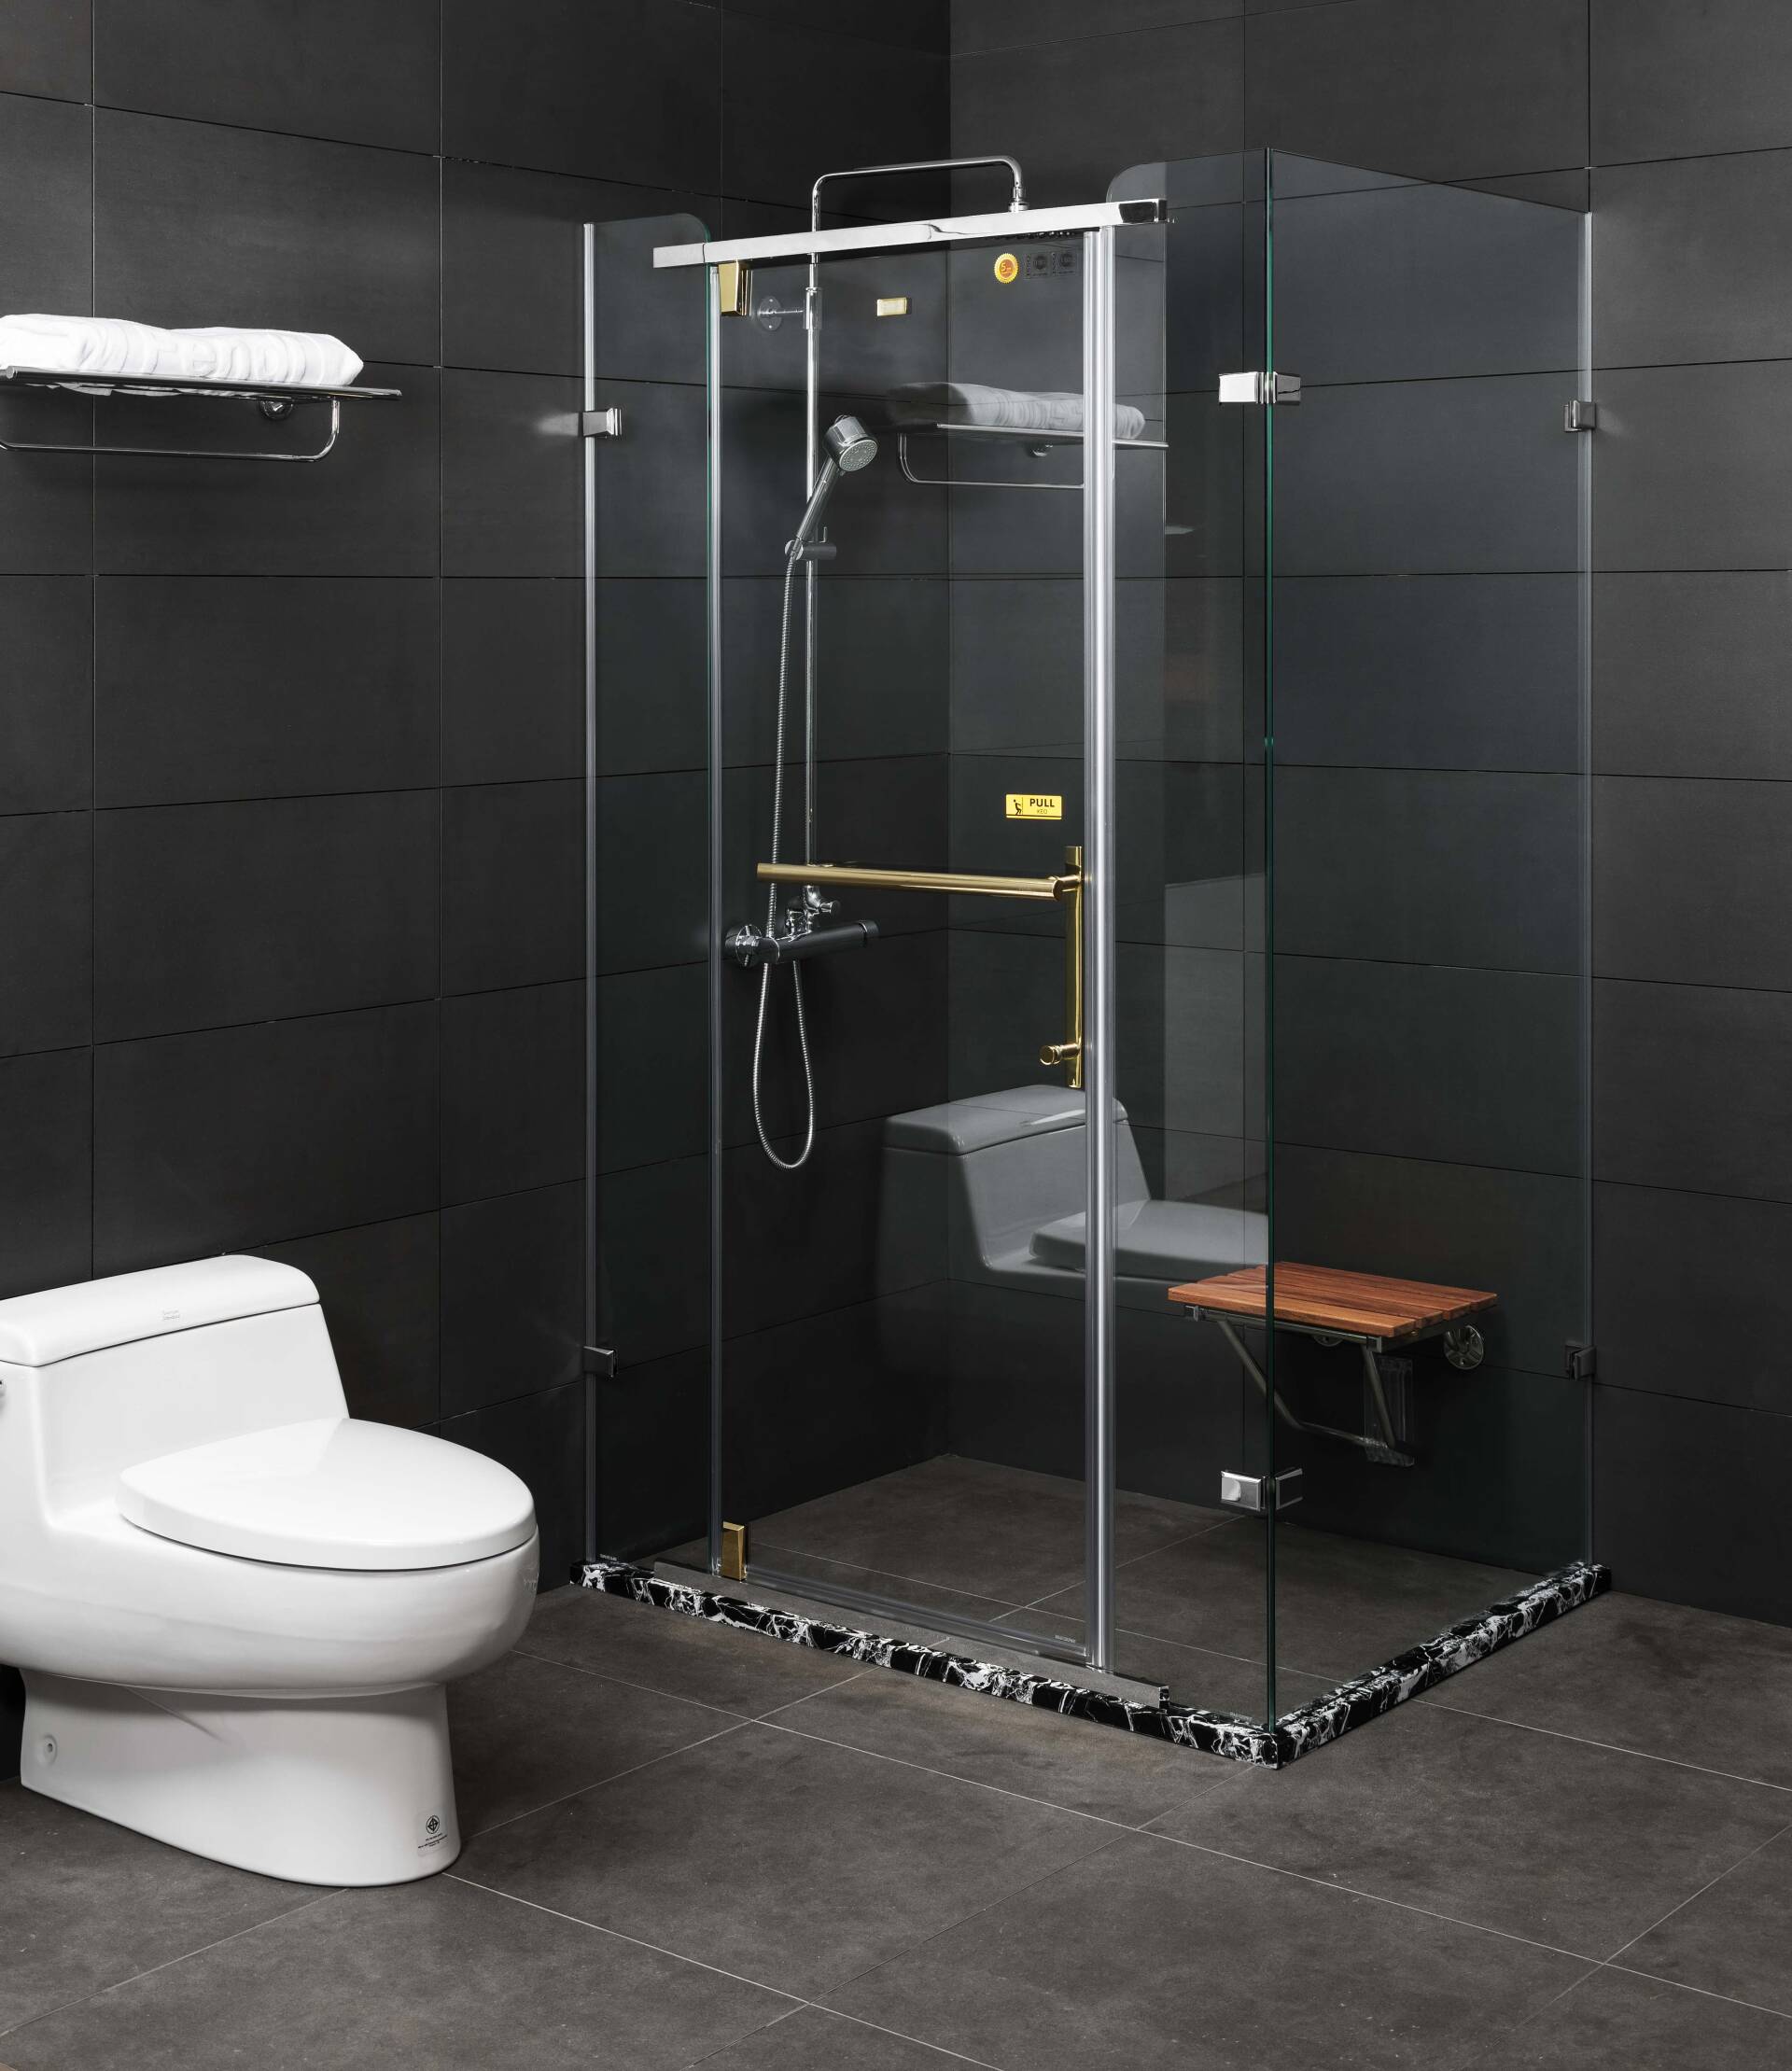 Ngoài ra, Phòng tắm kính vuông góc cửa mở trượt 2 bên sở hữu thiết kế linh hoạt và thuận tiện cho người sử dụng